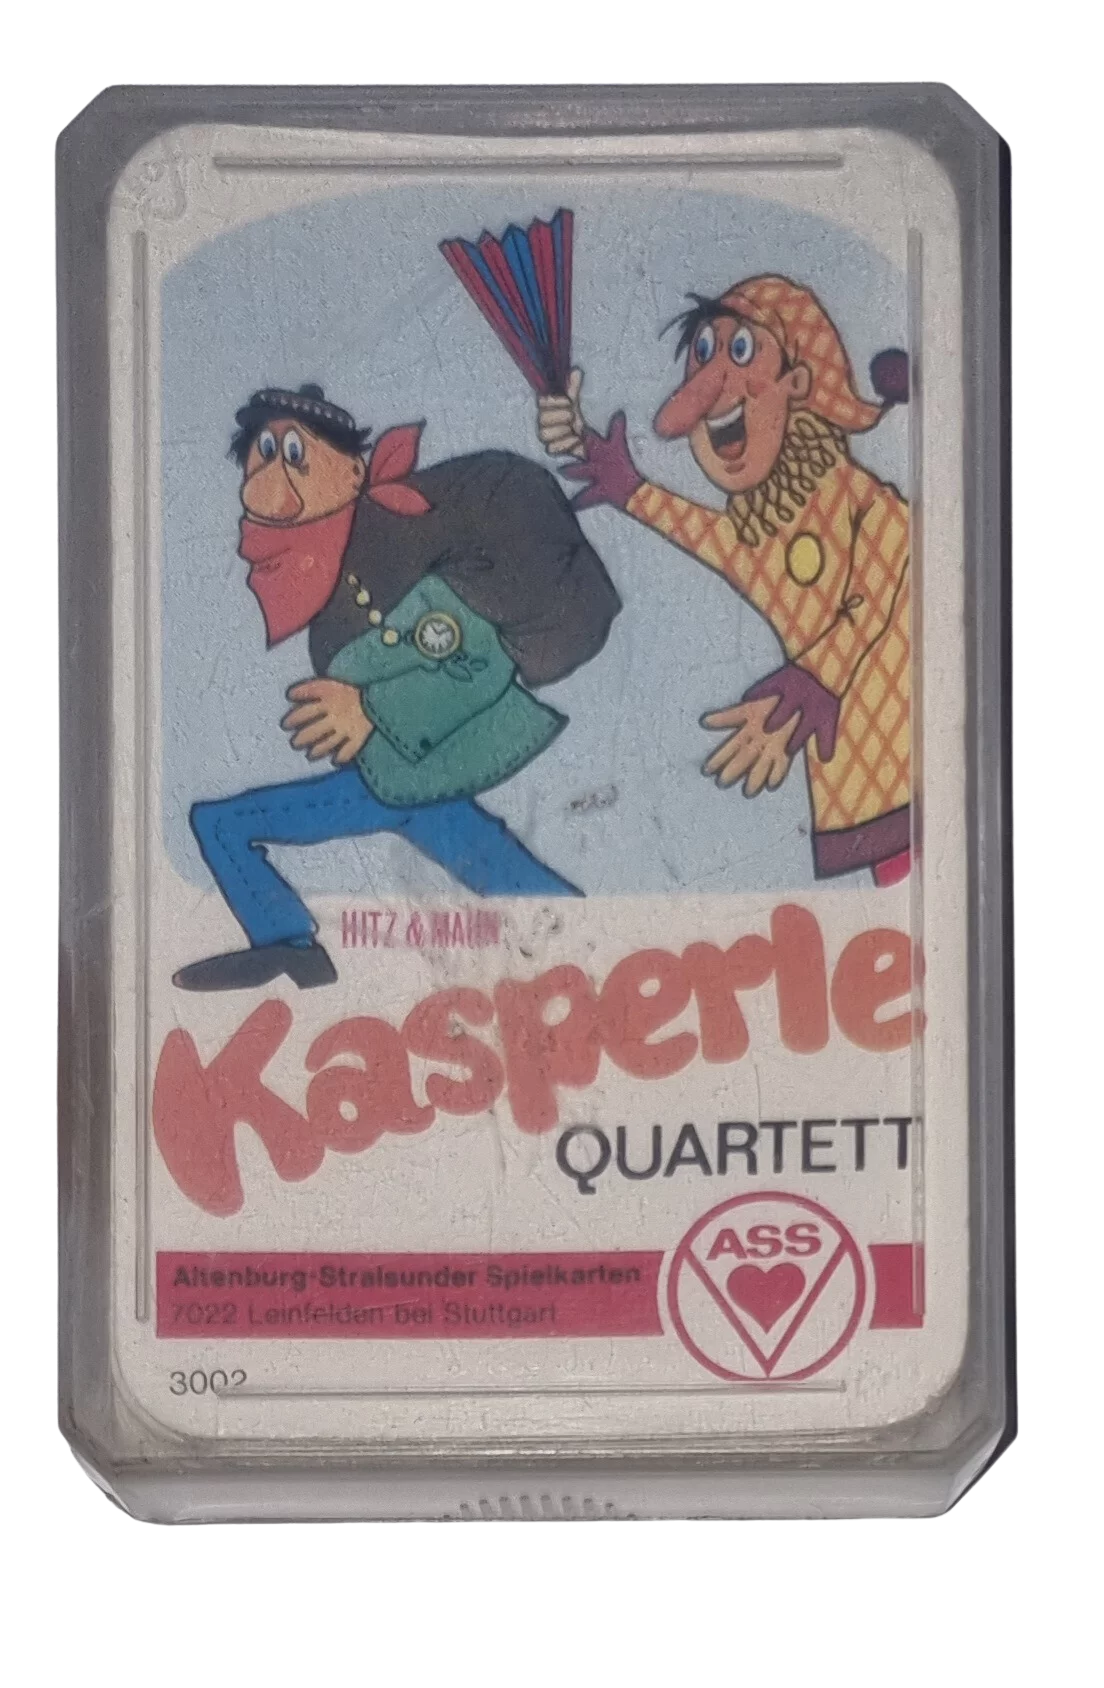 ASS Kasperle Quartett 3002